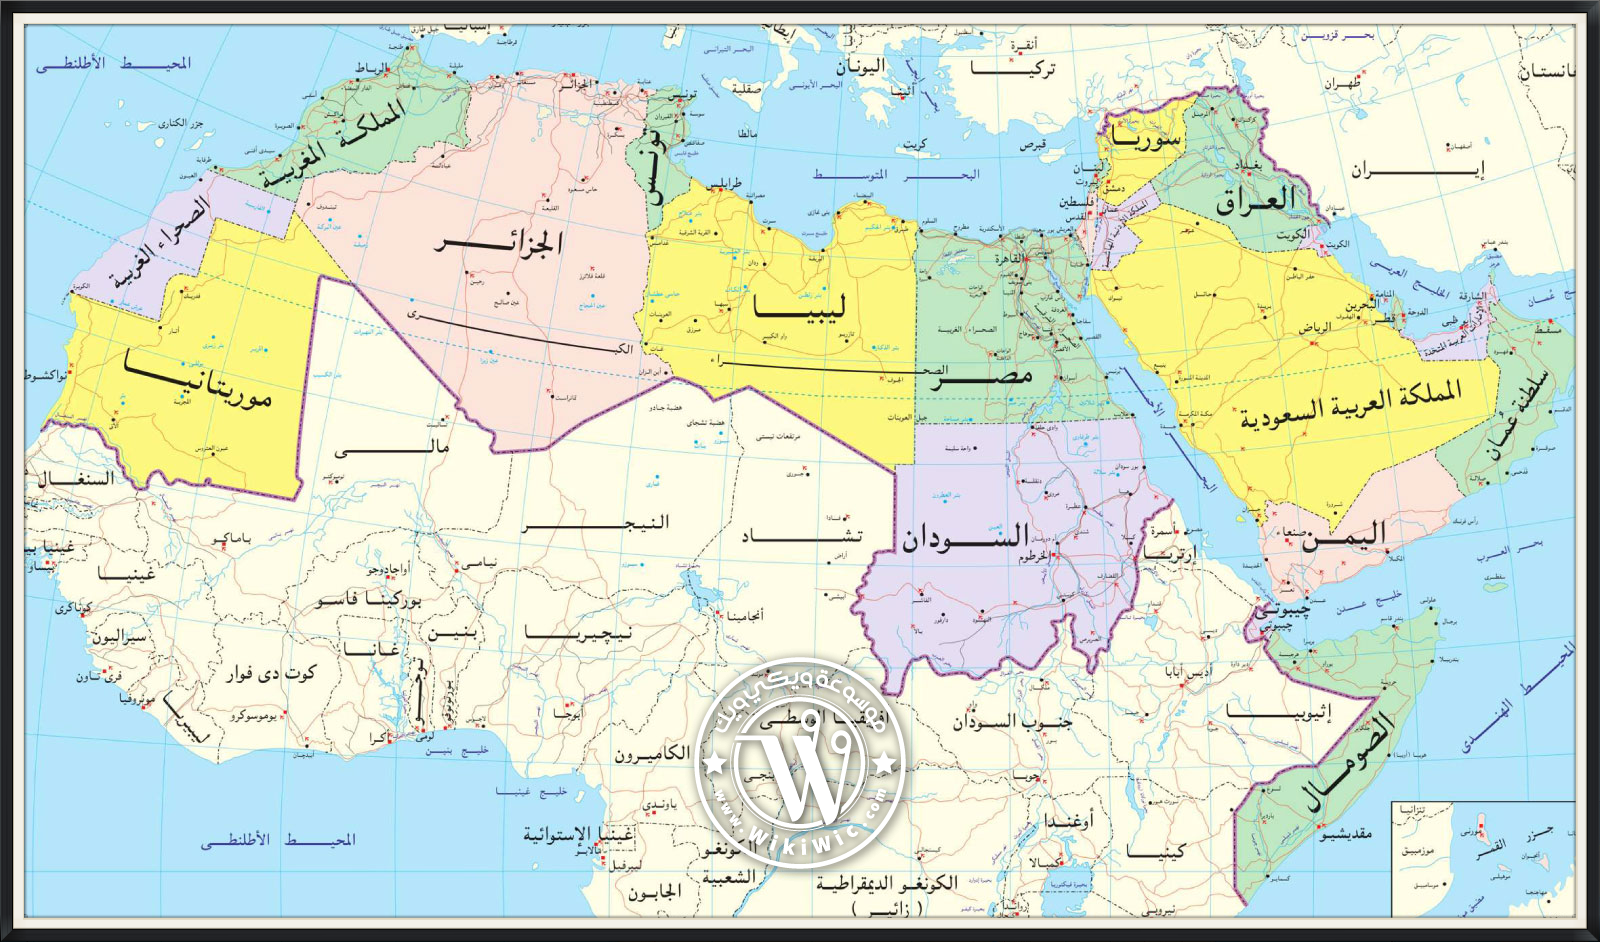 عجلة كلام فارغ اذهب للأعلى  عدد السكان في الوطن العربي | التركيبة السكانية للوطن العربي - Wiki Wic |  ويكي ويك